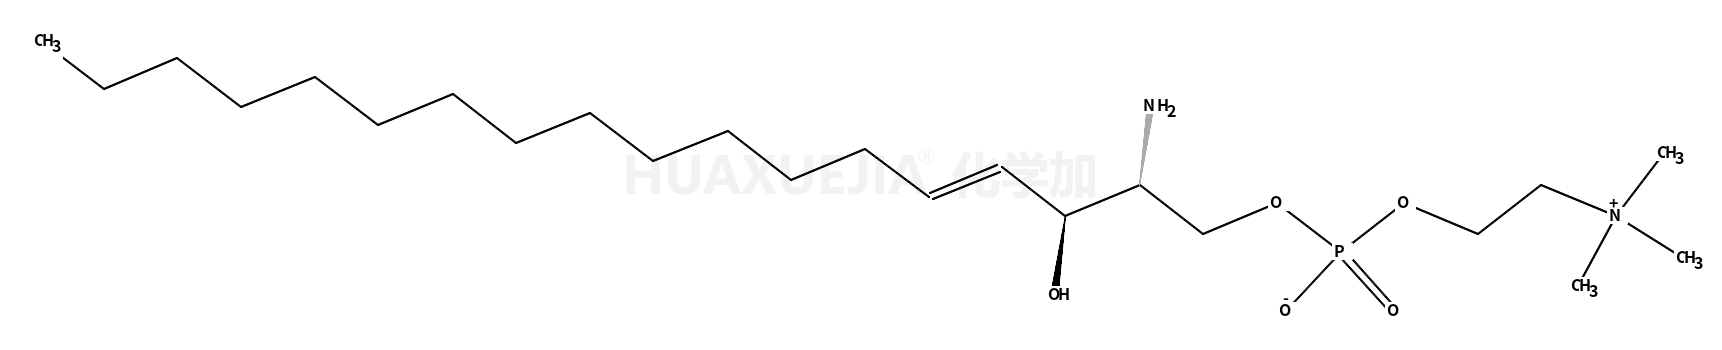 Sphingosylphosphorylcholine